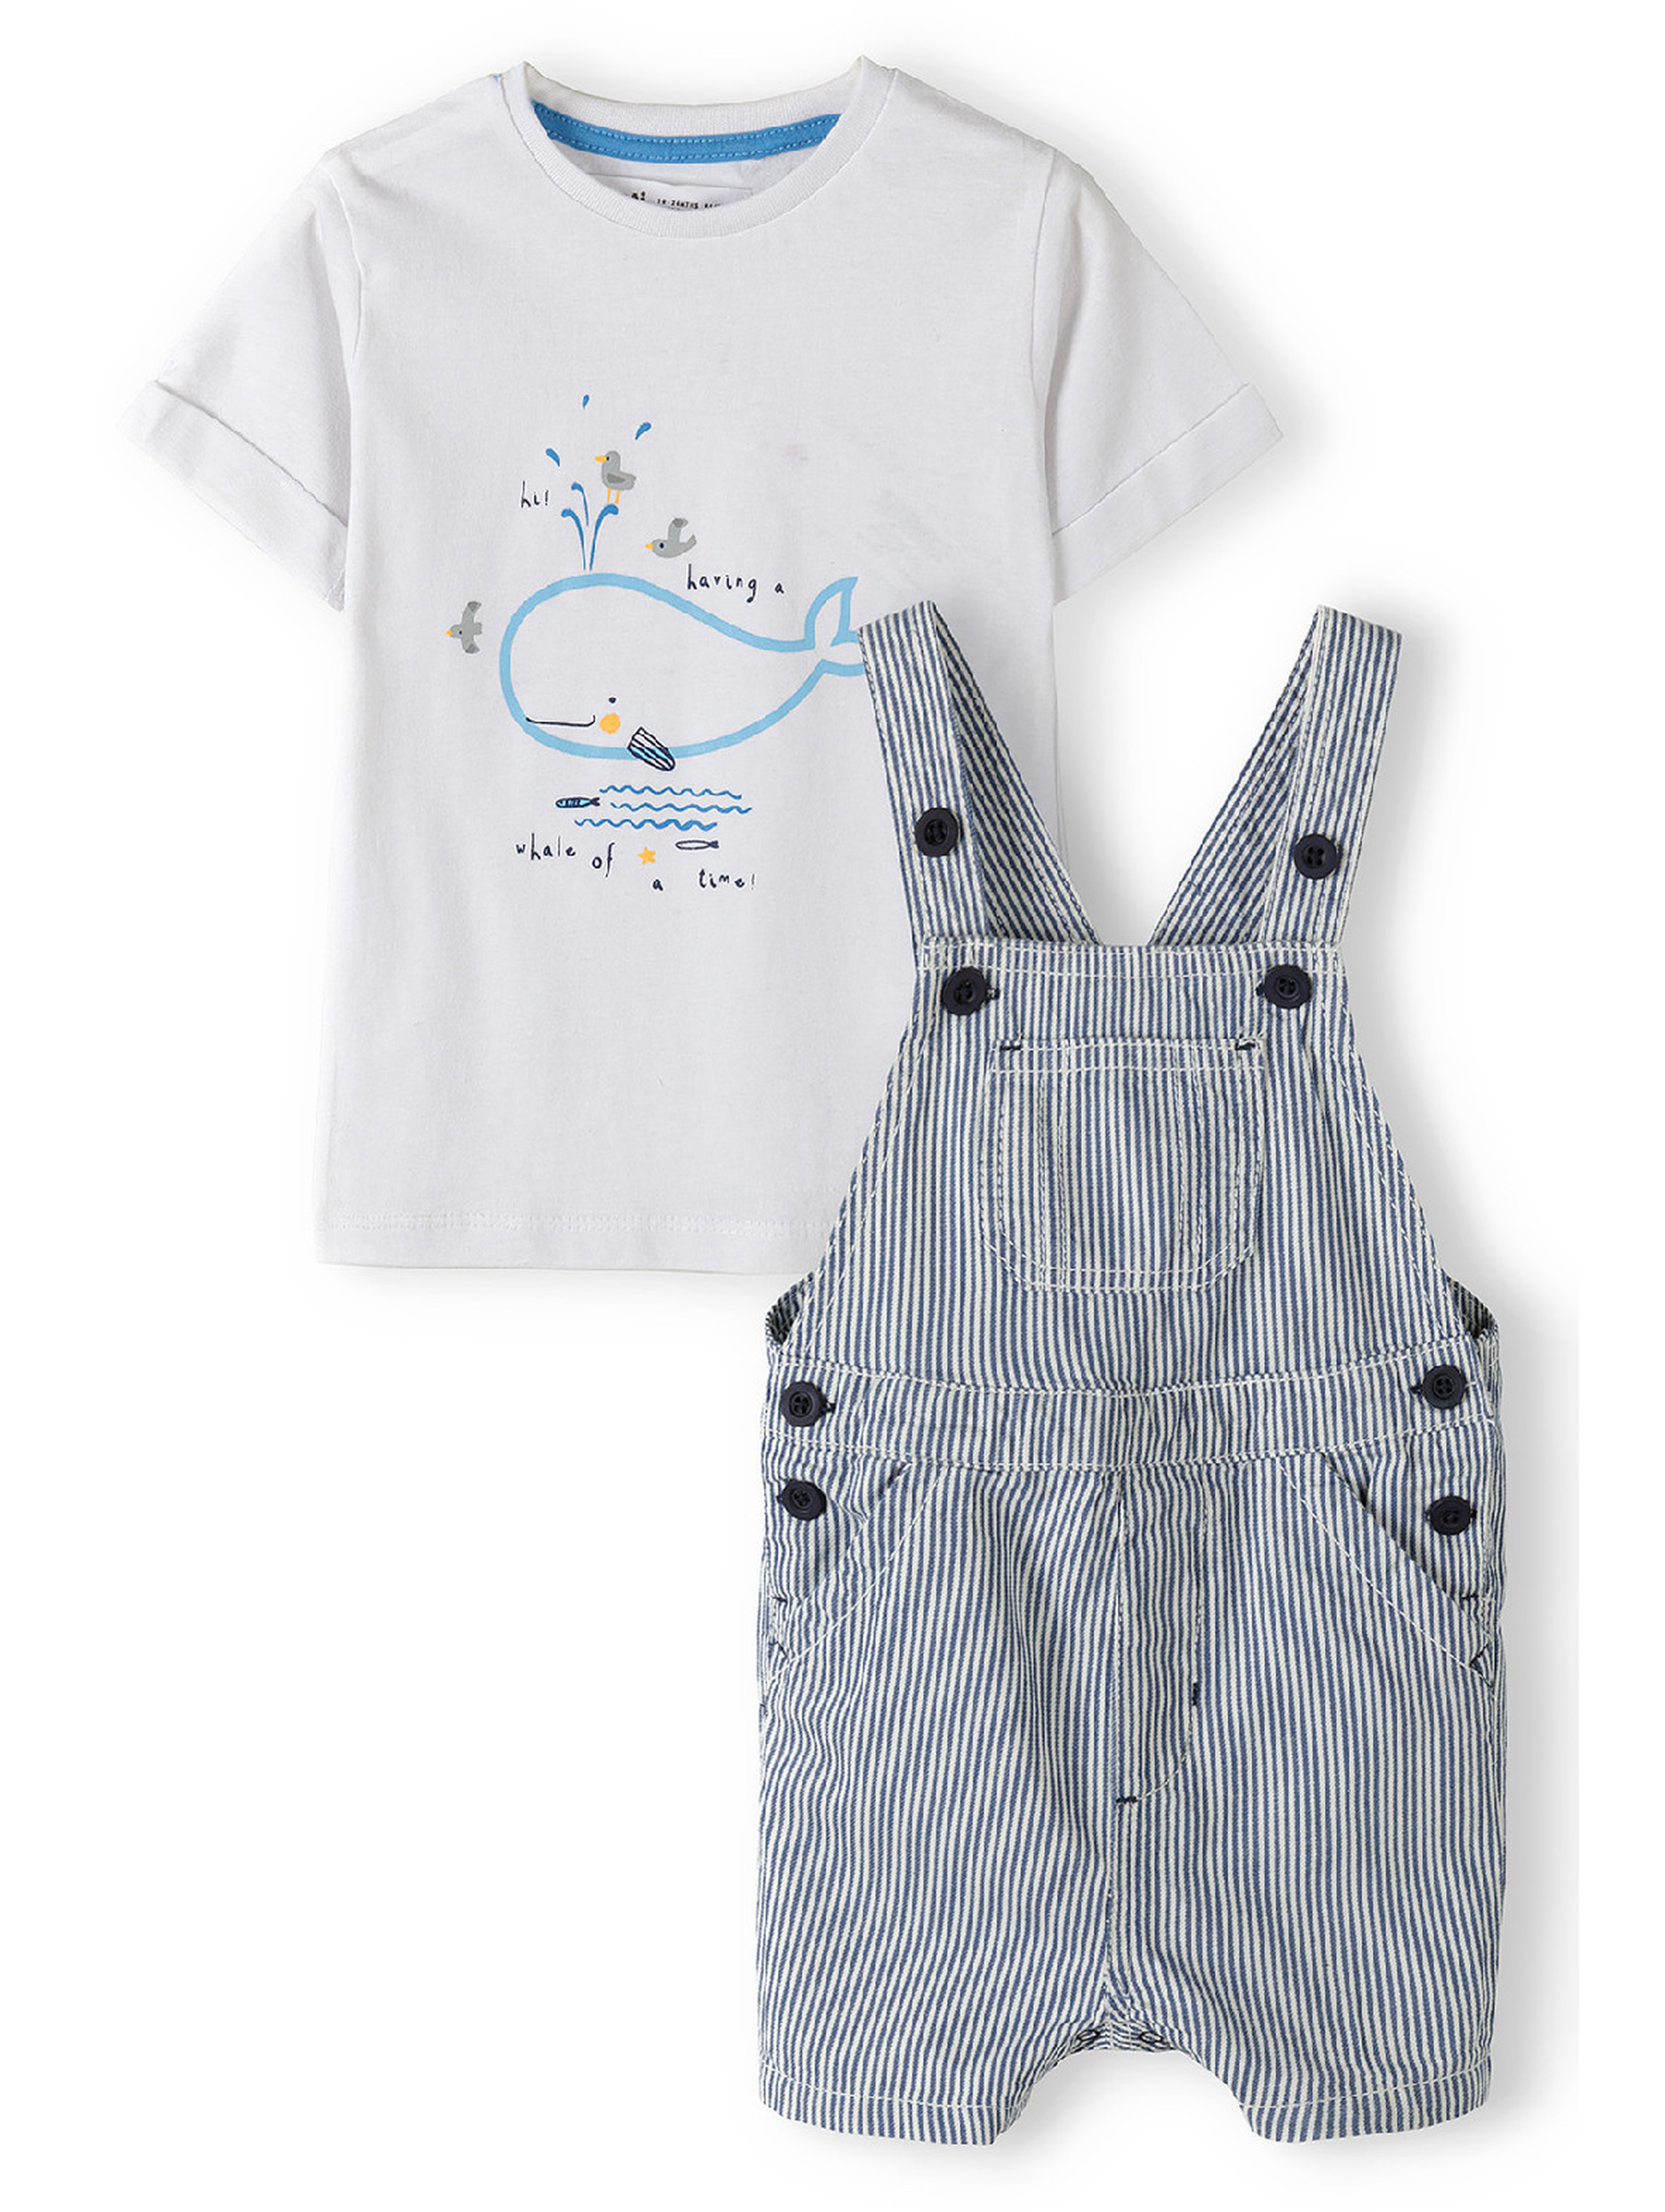 Komplet niemowlęcy bawełniany - biały t-shirt + ogrodniczki w paski